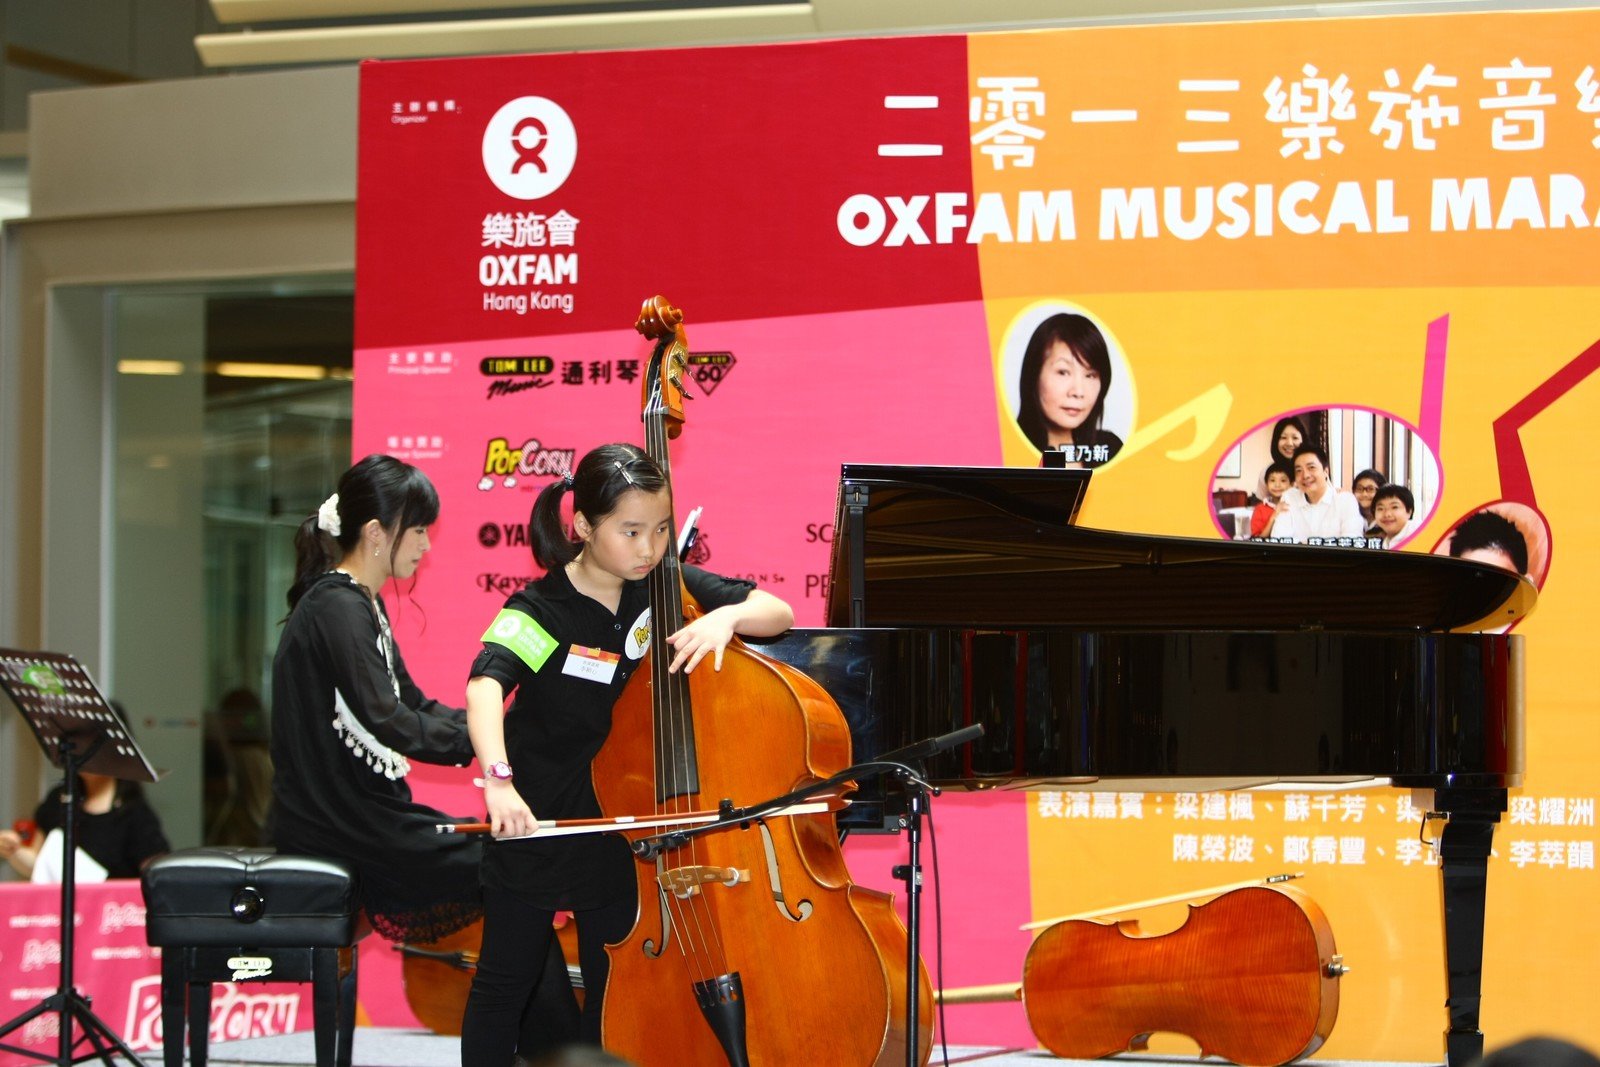 小小低音大提琴手李颖心于2013「乐施音乐马拉松」开幕礼上演奏两首乐曲。